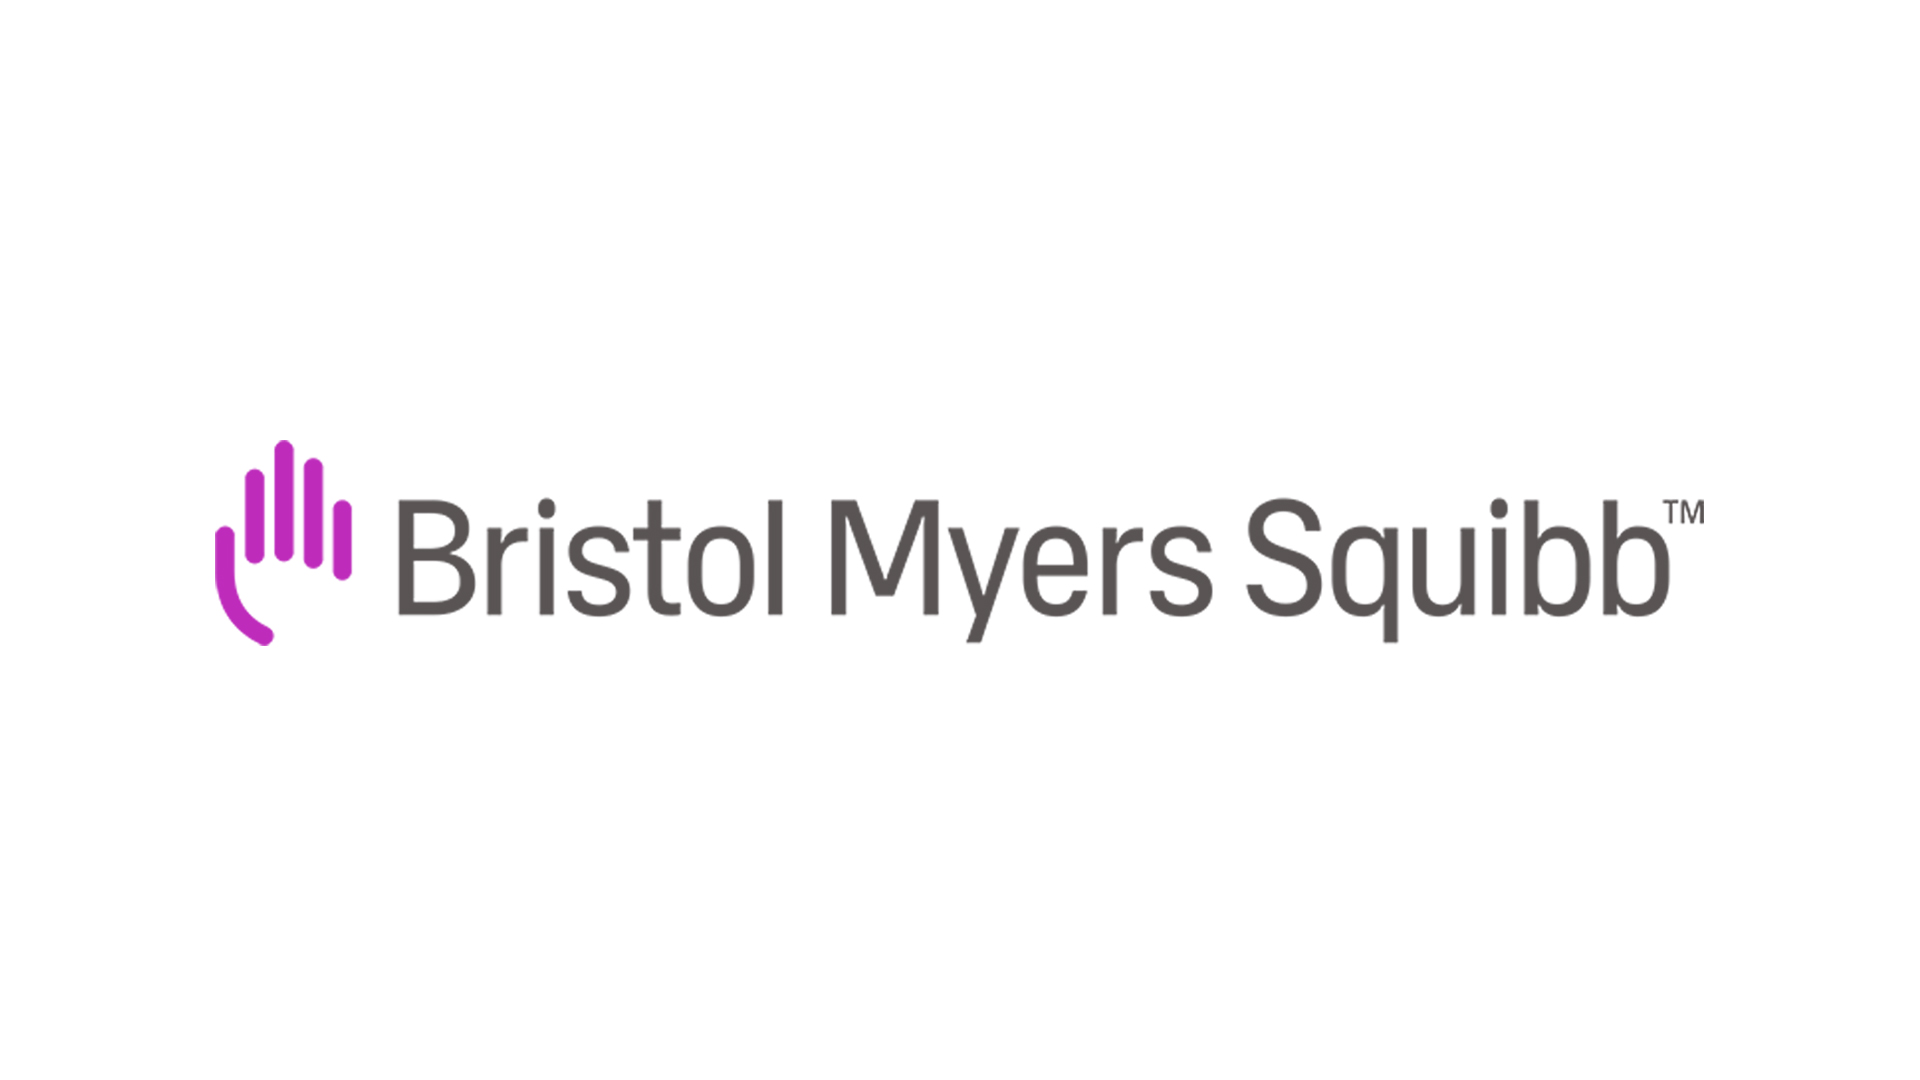 Bristol Meyers